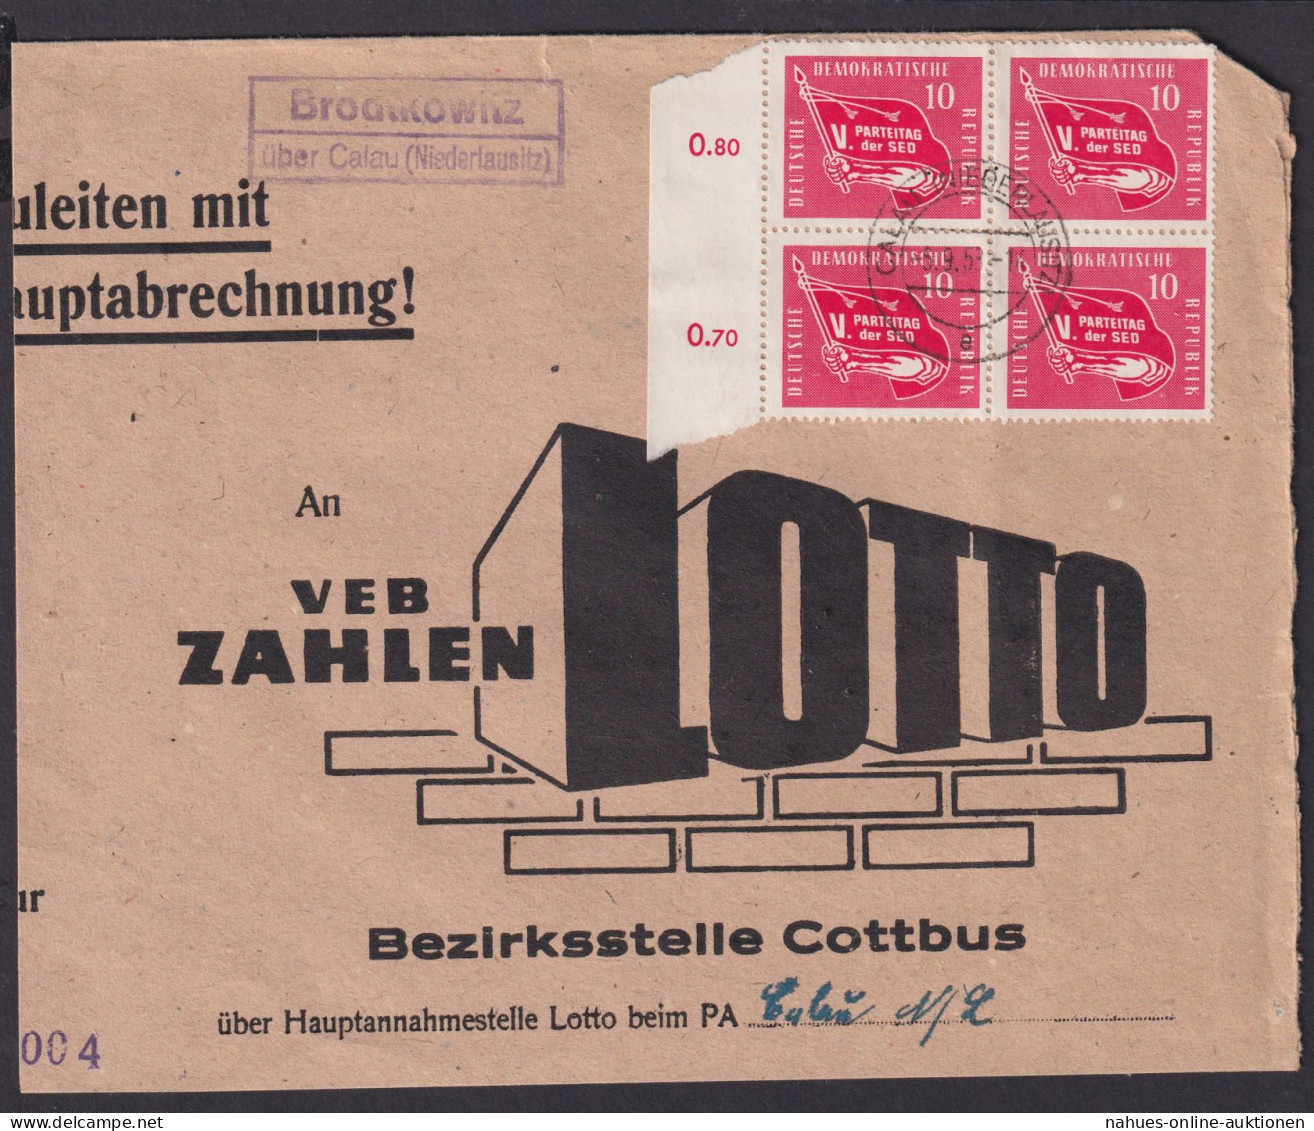 Brodtkowitz über Calau Niederlausitz Brandenburg DDR Brief Landpoststempel - Storia Postale